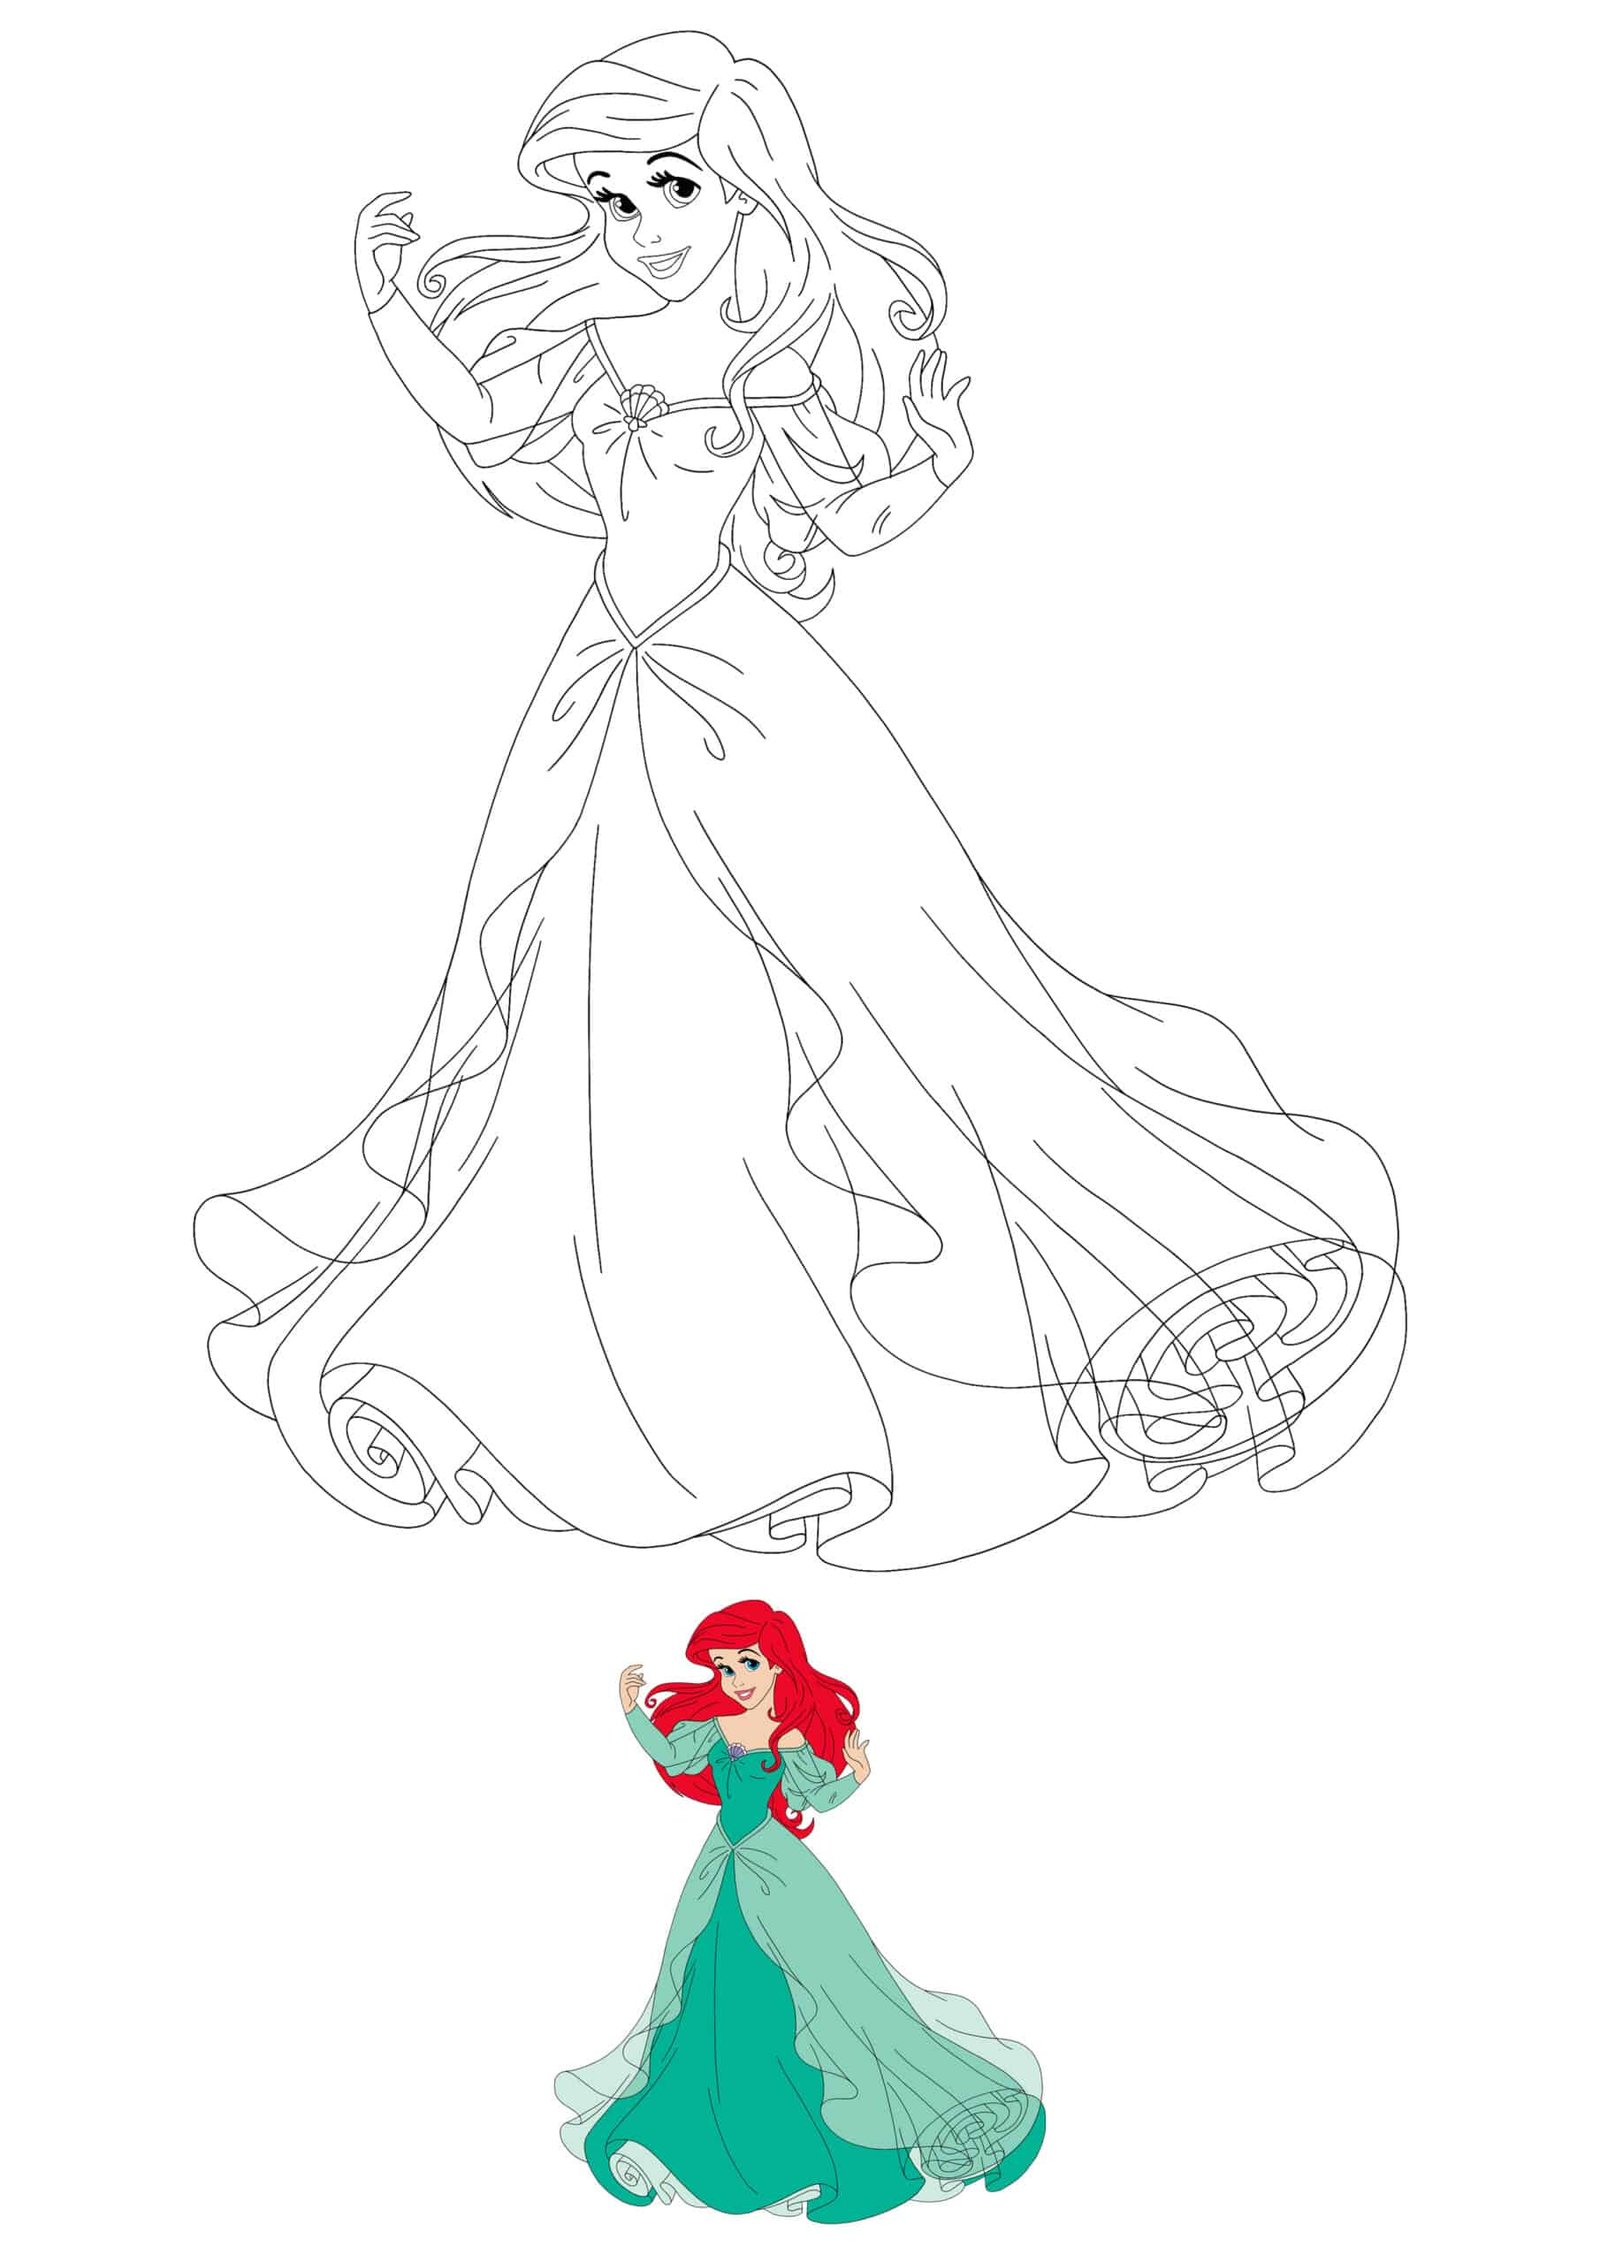 Disney princess ariel coloring pages